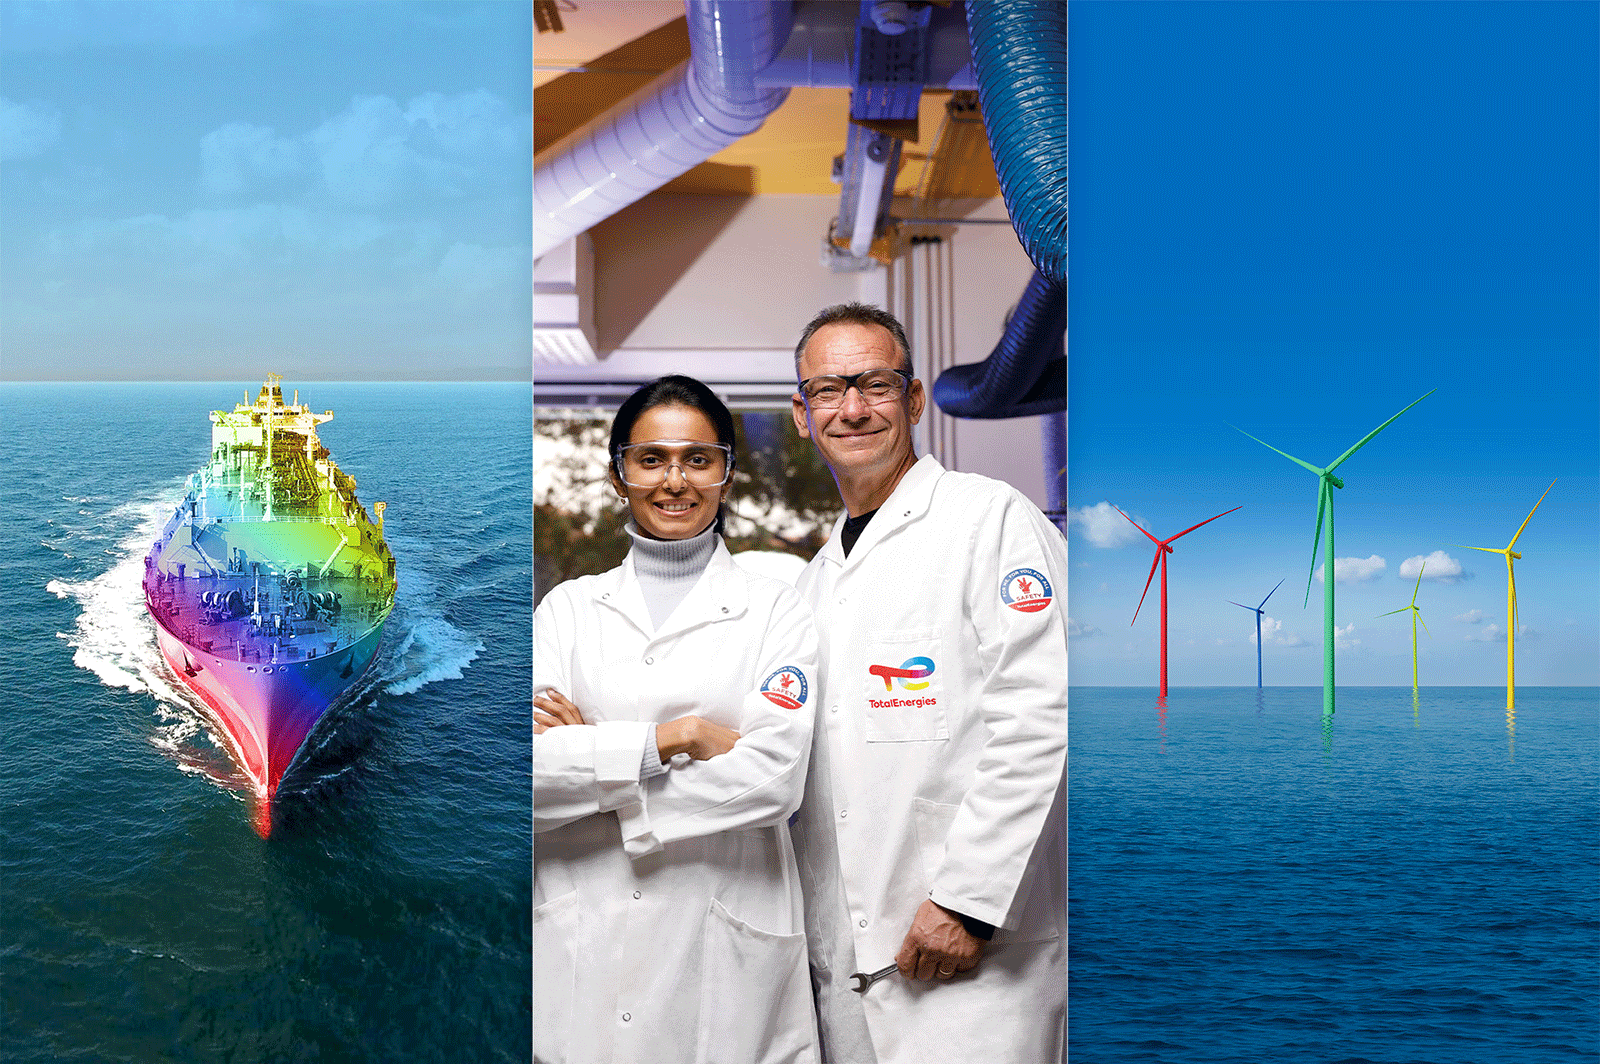 Ship, woman, man, wind turbines